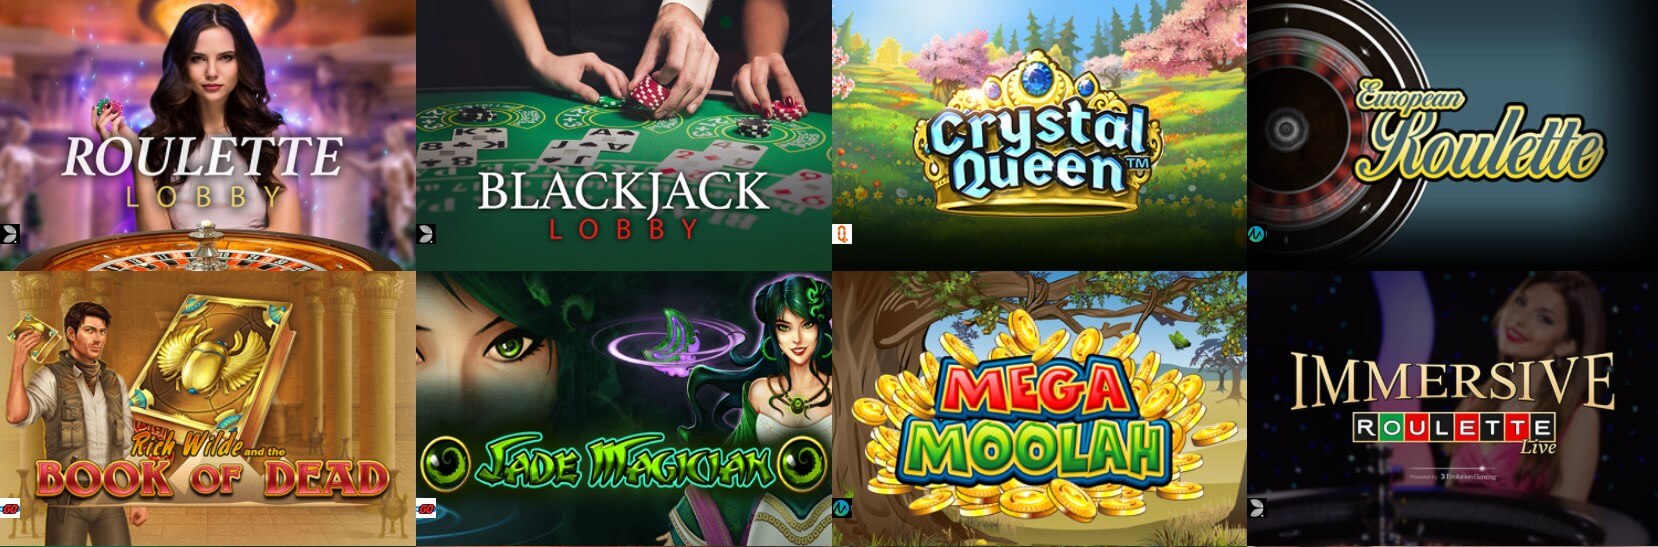 casino cruise online spiele